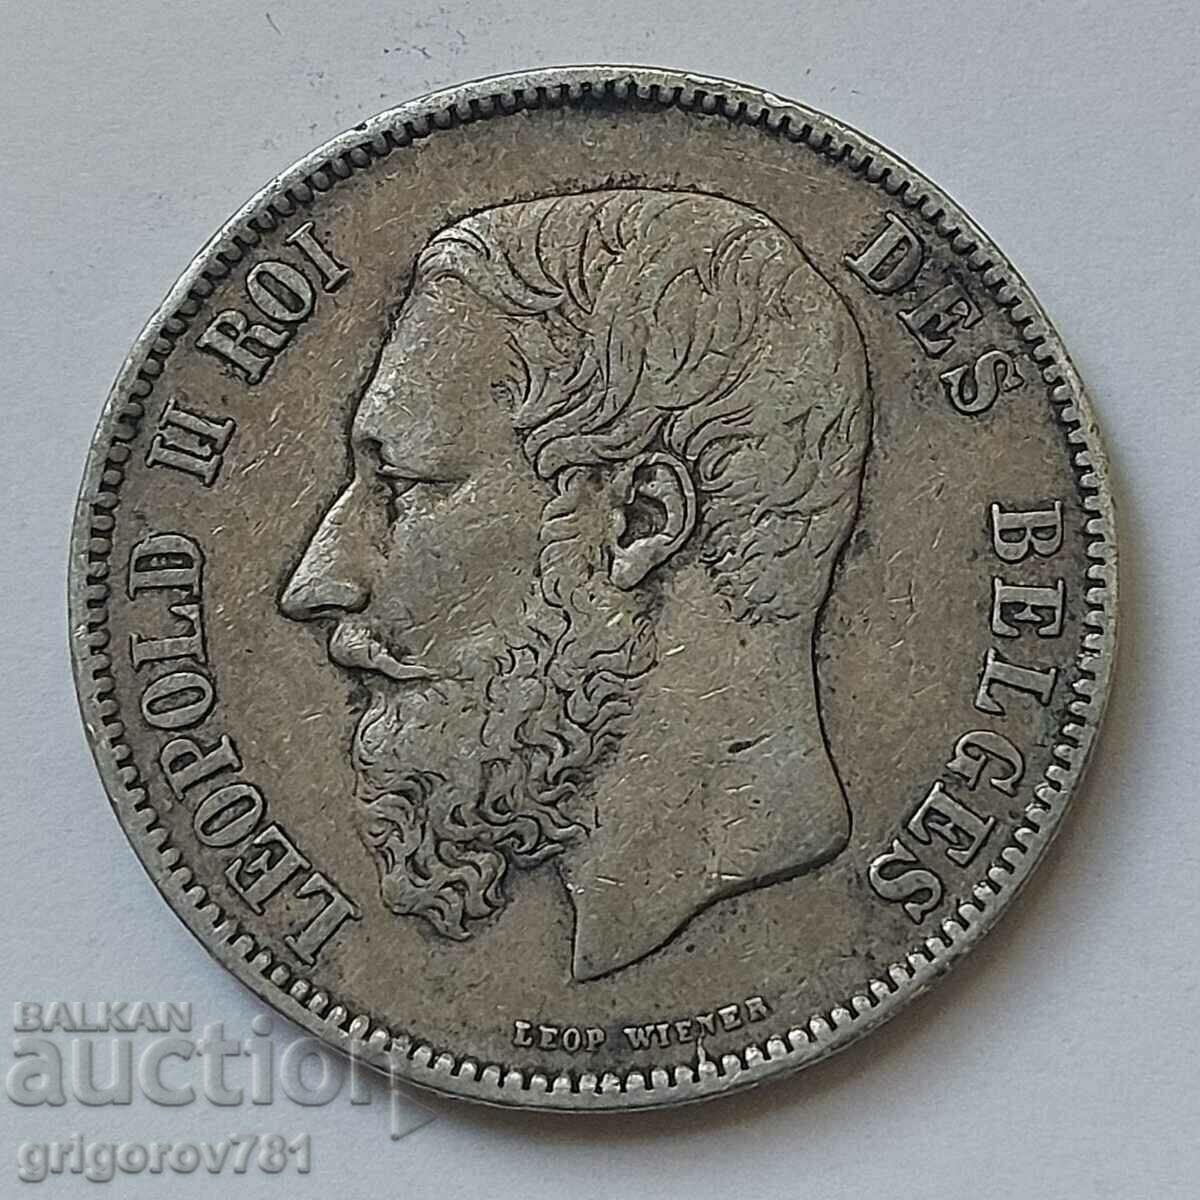 5 Francs Silver Belgium 1873 Silver Coin #182